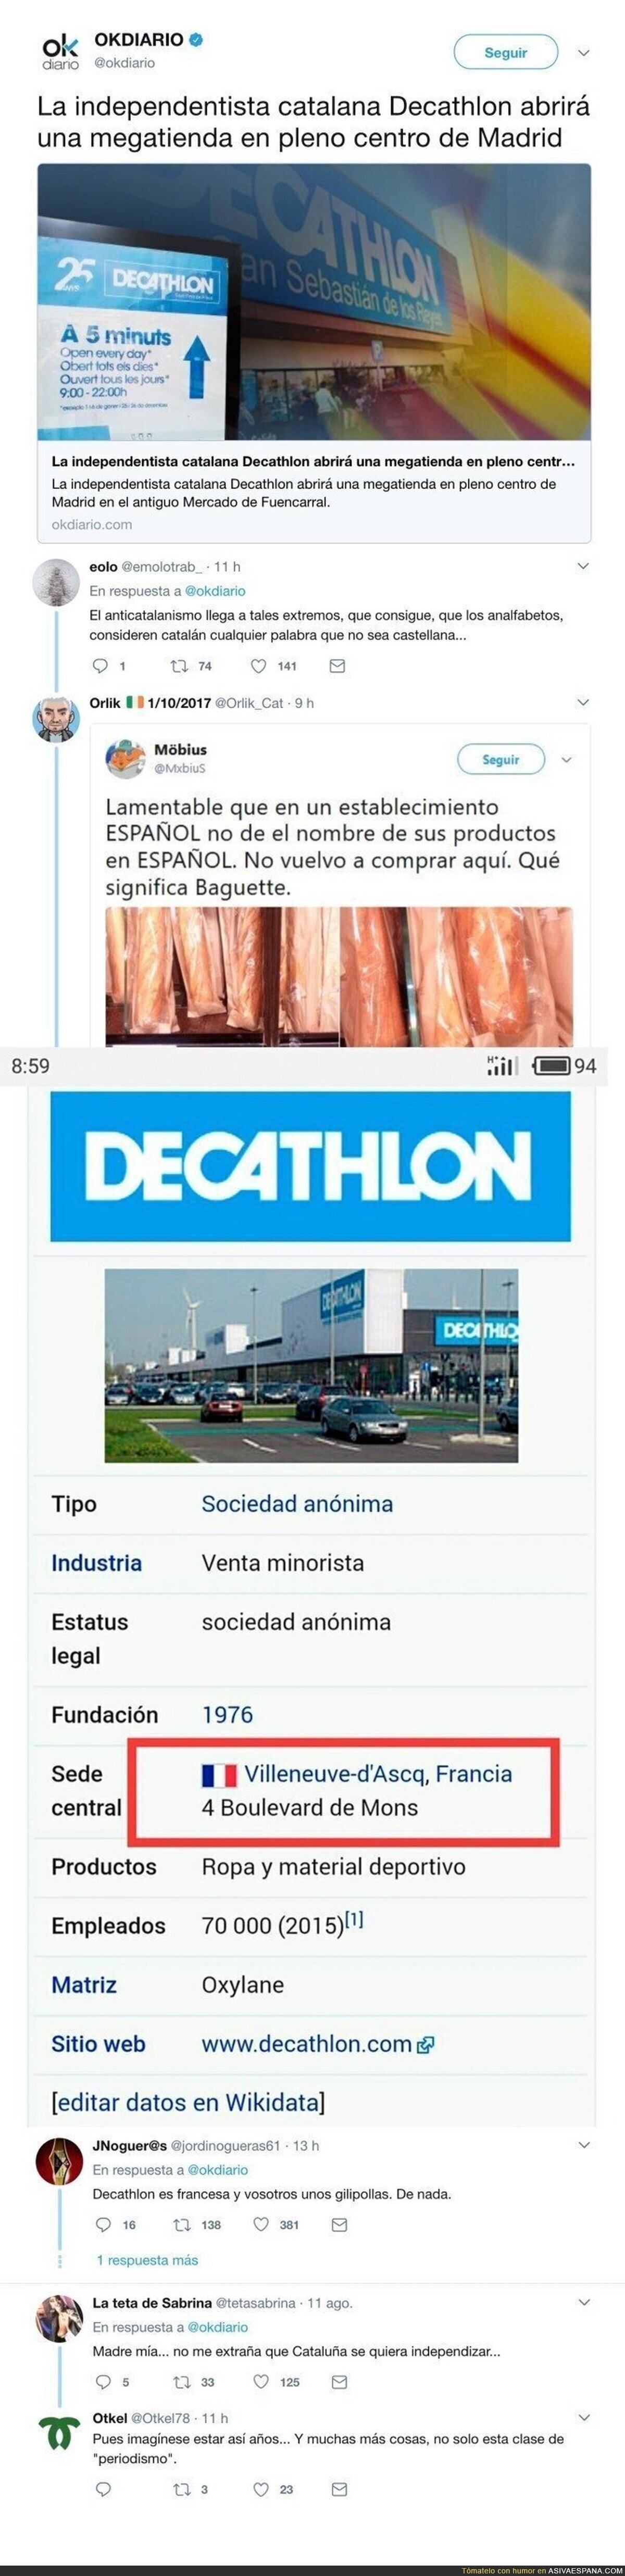 OKDiario la lía a lo grande con esta noticia sobre la nueva tienda de Decathlon en Madrid